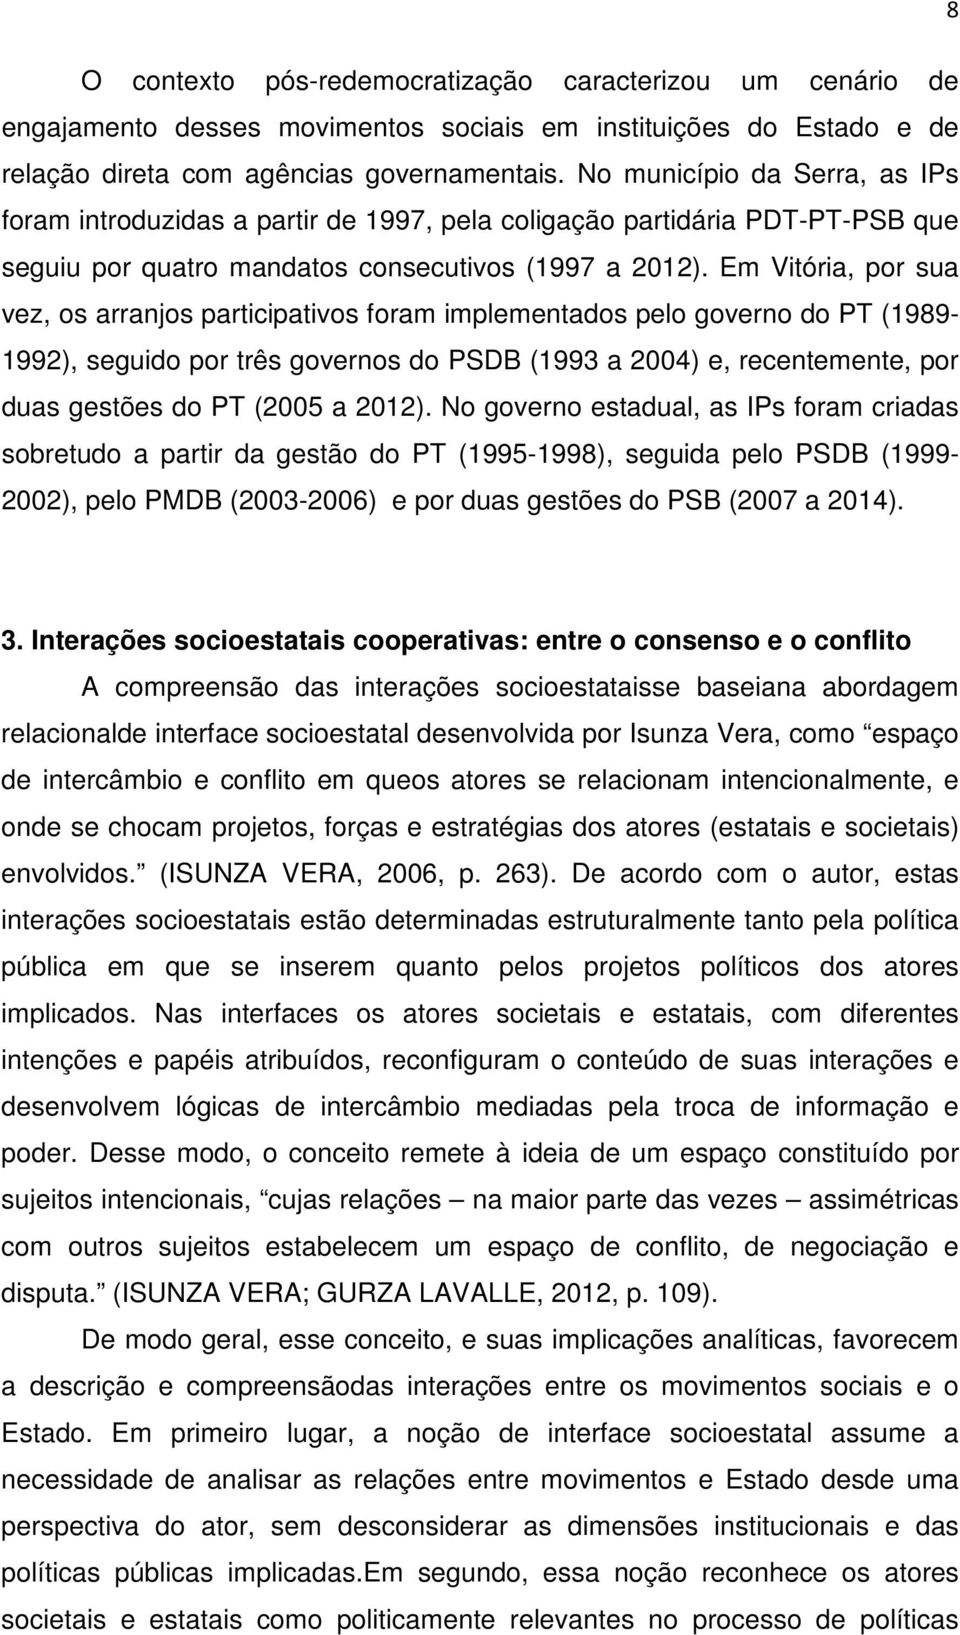 Em Vitória, por sua vez, os arranjos participativos foram implementados pelo governo do PT (1989-1992), seguido por três governos do PSDB (1993 a 2004) e, recentemente, por duas gestões do PT (2005 a